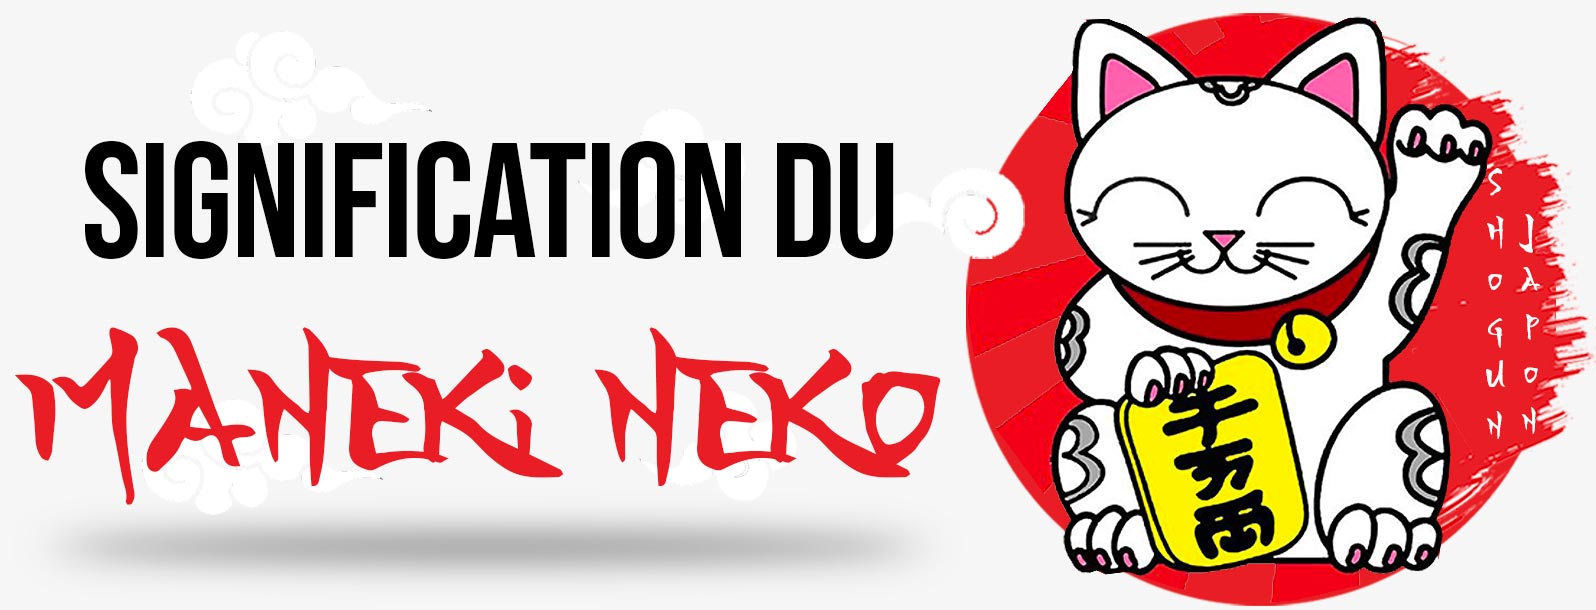 Maneki Neko Signification